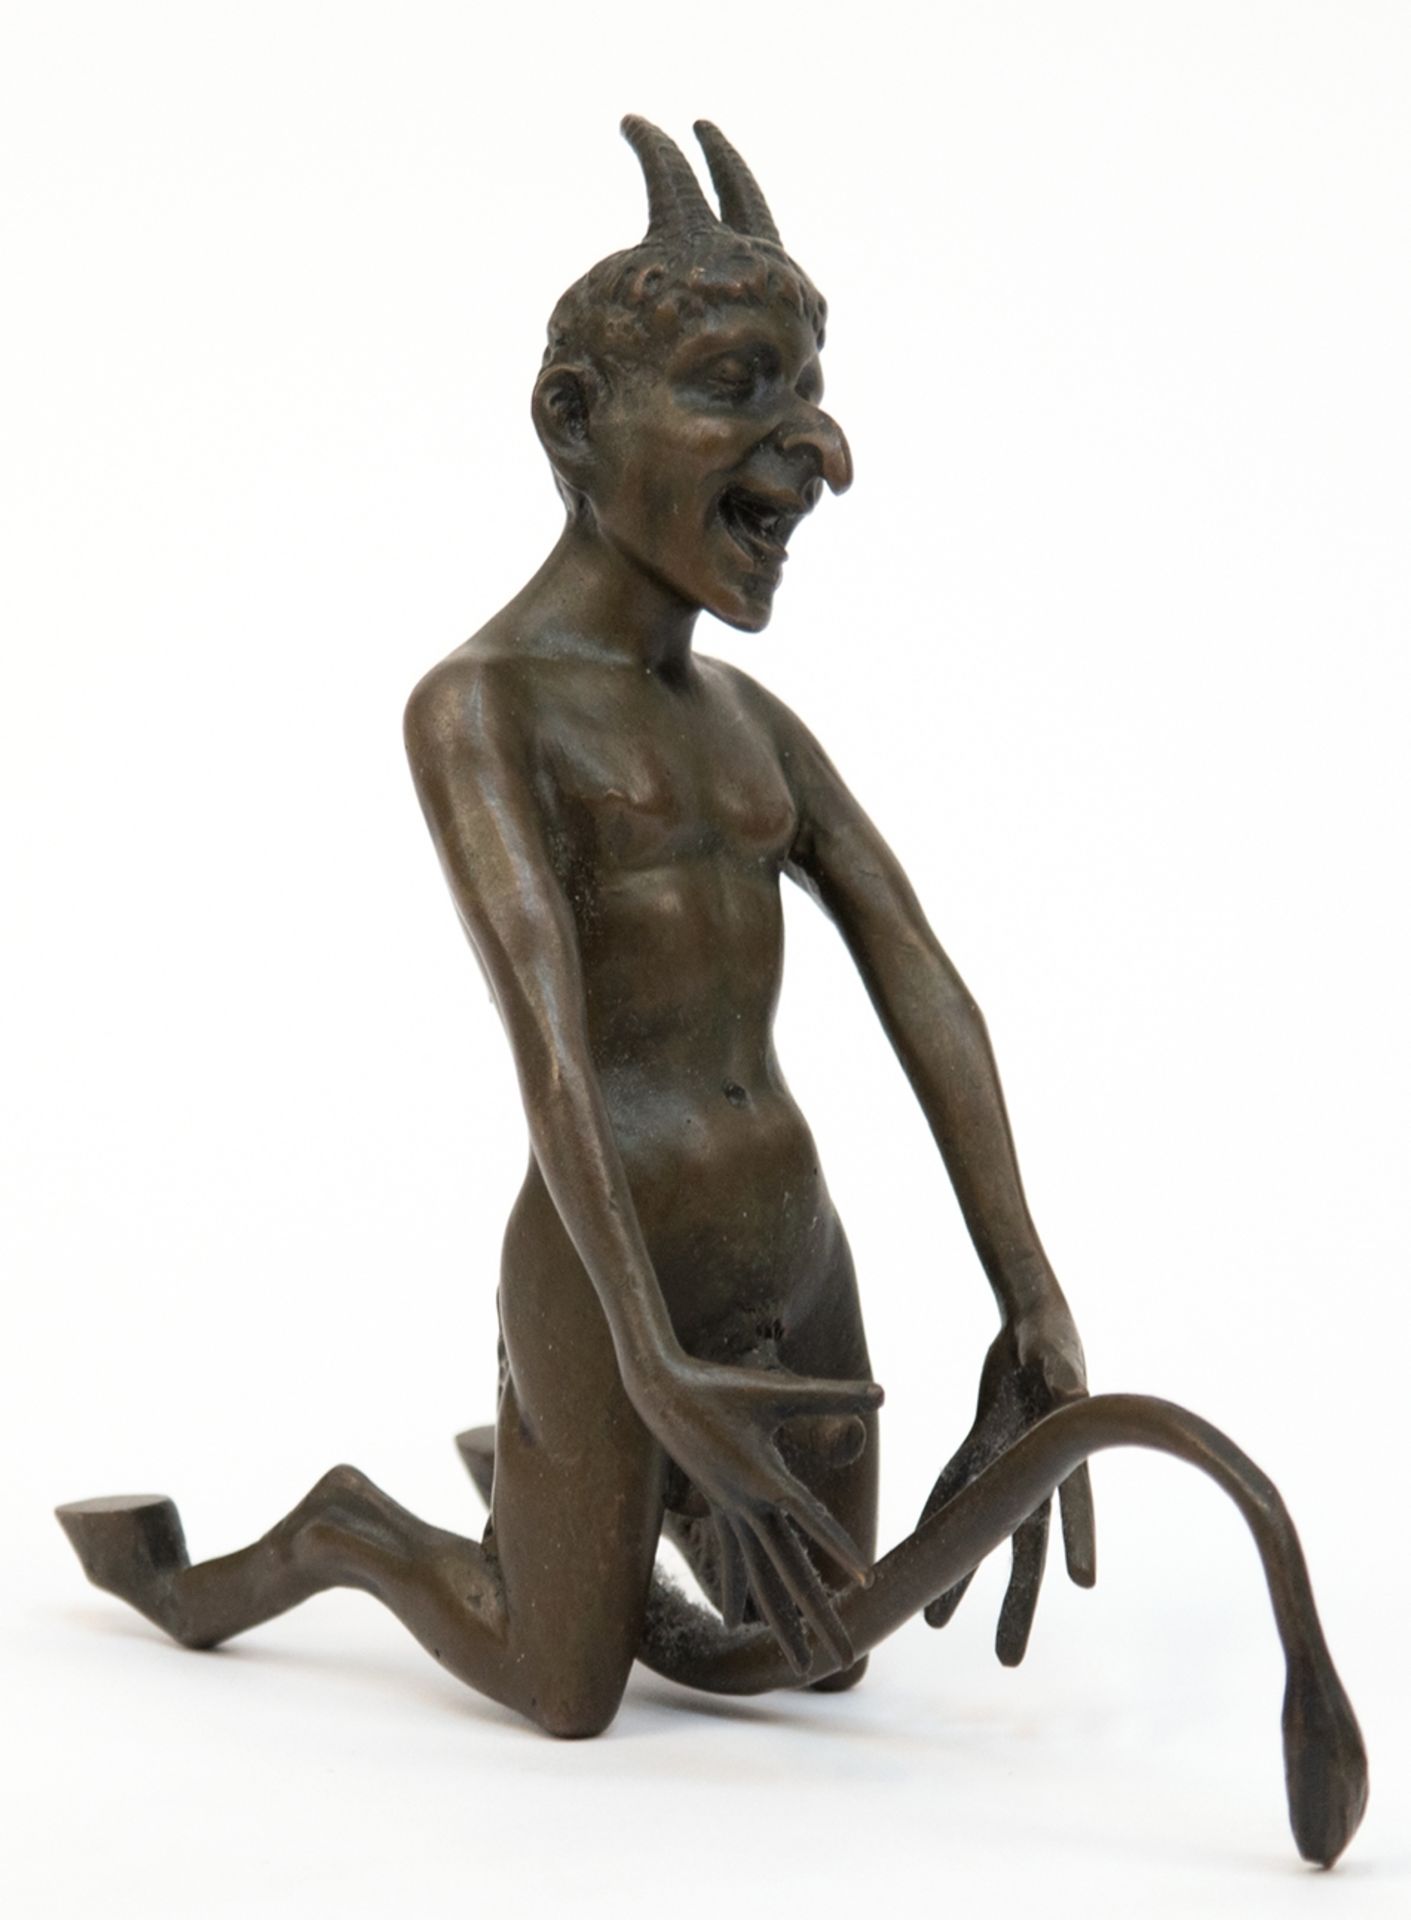 Figur "Erotika- Teufel", Bronze, dunkel patiniert, signiert "Milo", H. 15 cm